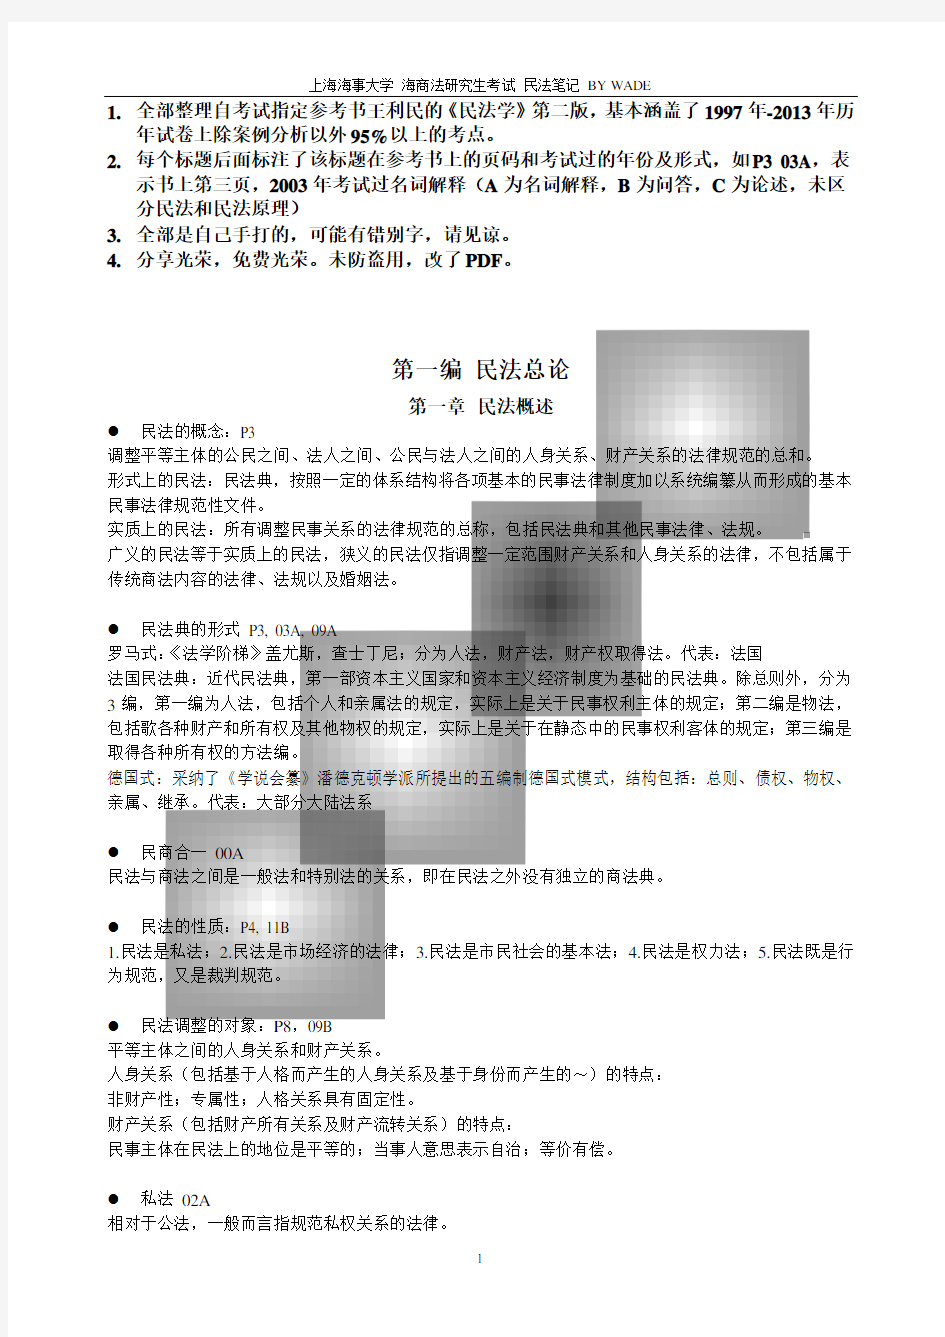 上海海事 海商法研究生考试 民法笔记